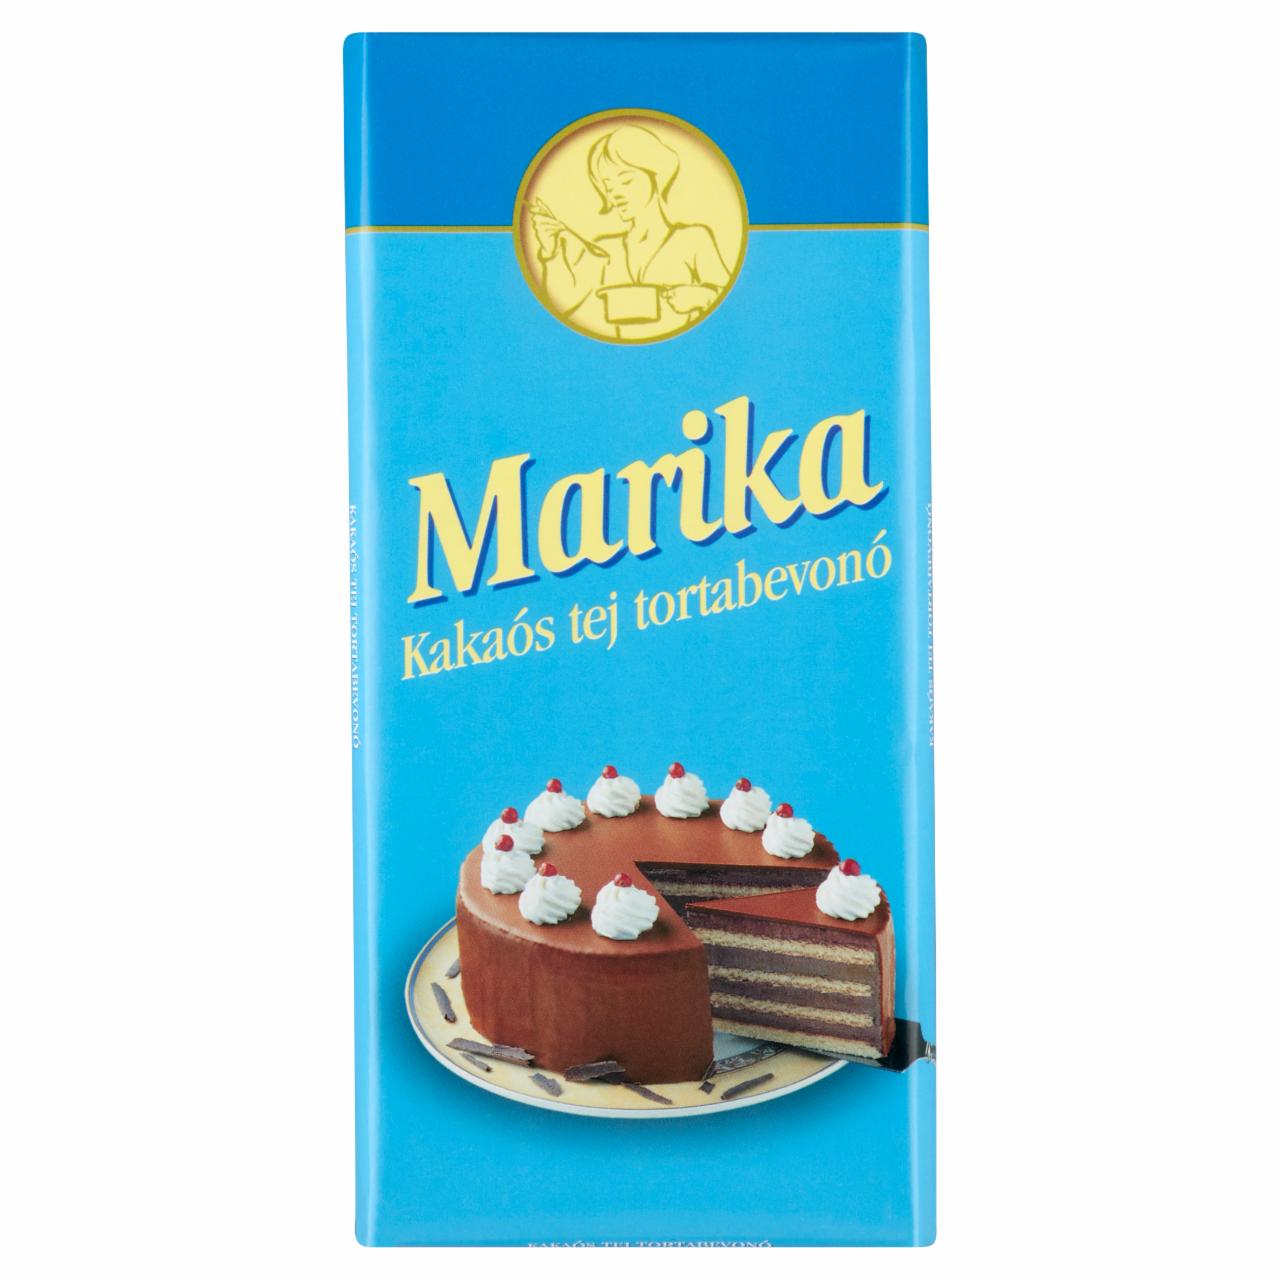 Képek - Marika kakaós tej tortabevonó 100 g